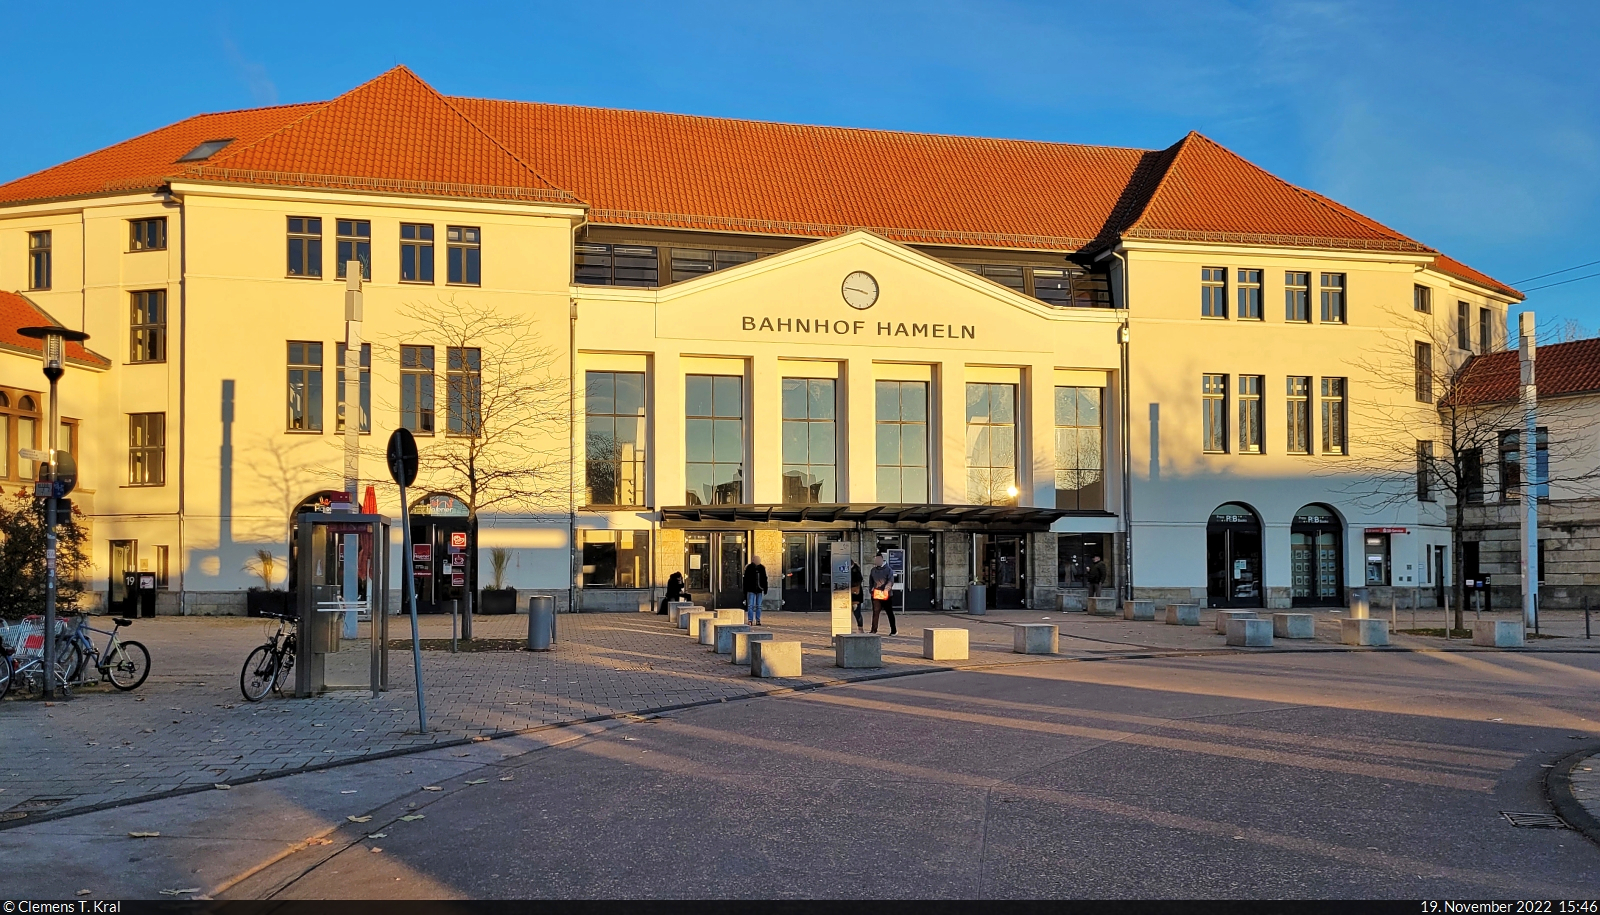 Das Empfangsgebäude des Keilbahnhofs Hameln in den letzten Sonnenstrahlen eines kalten November-Tages.

🕓 18.11.2022 | 15:46 Uhr